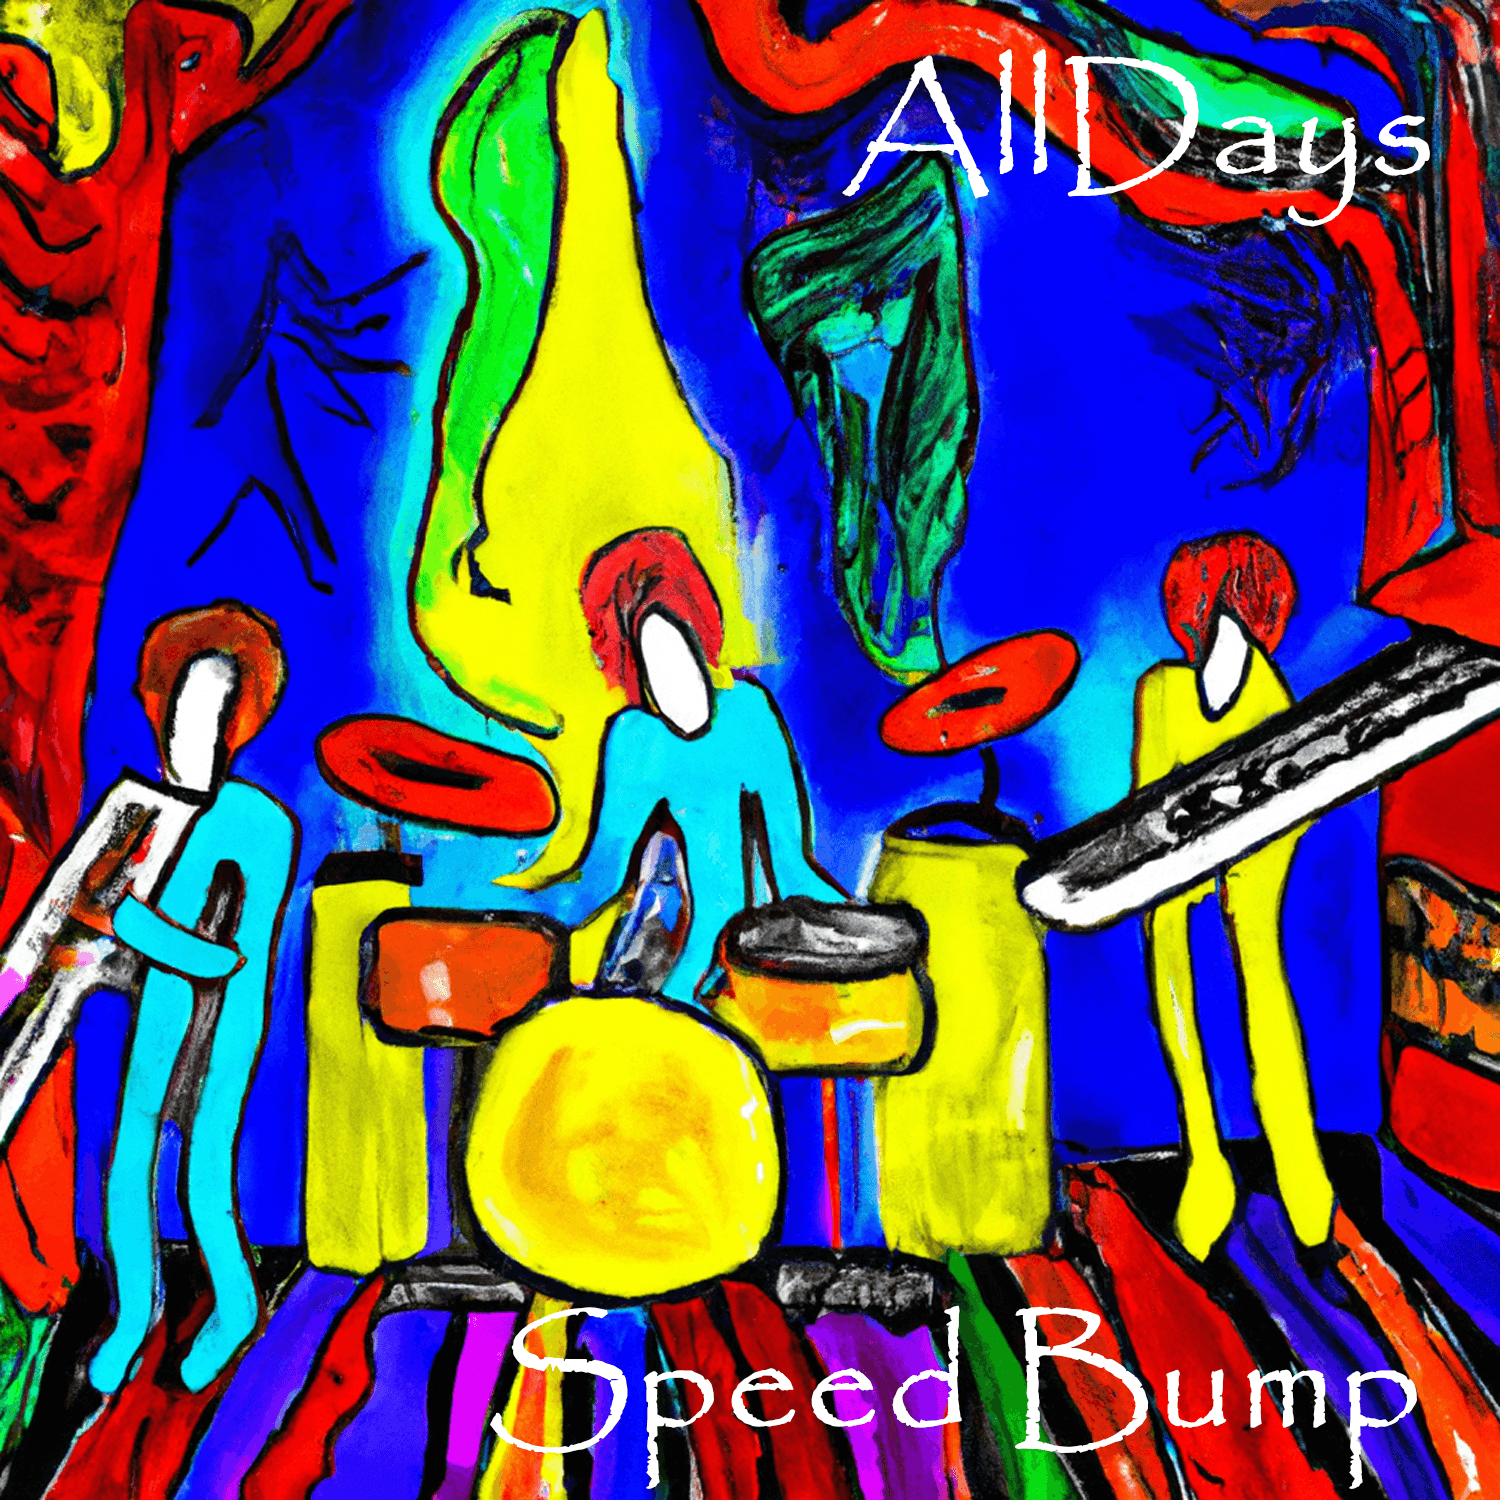 AllDays "Speed Bump" Full Song NFT 11/12